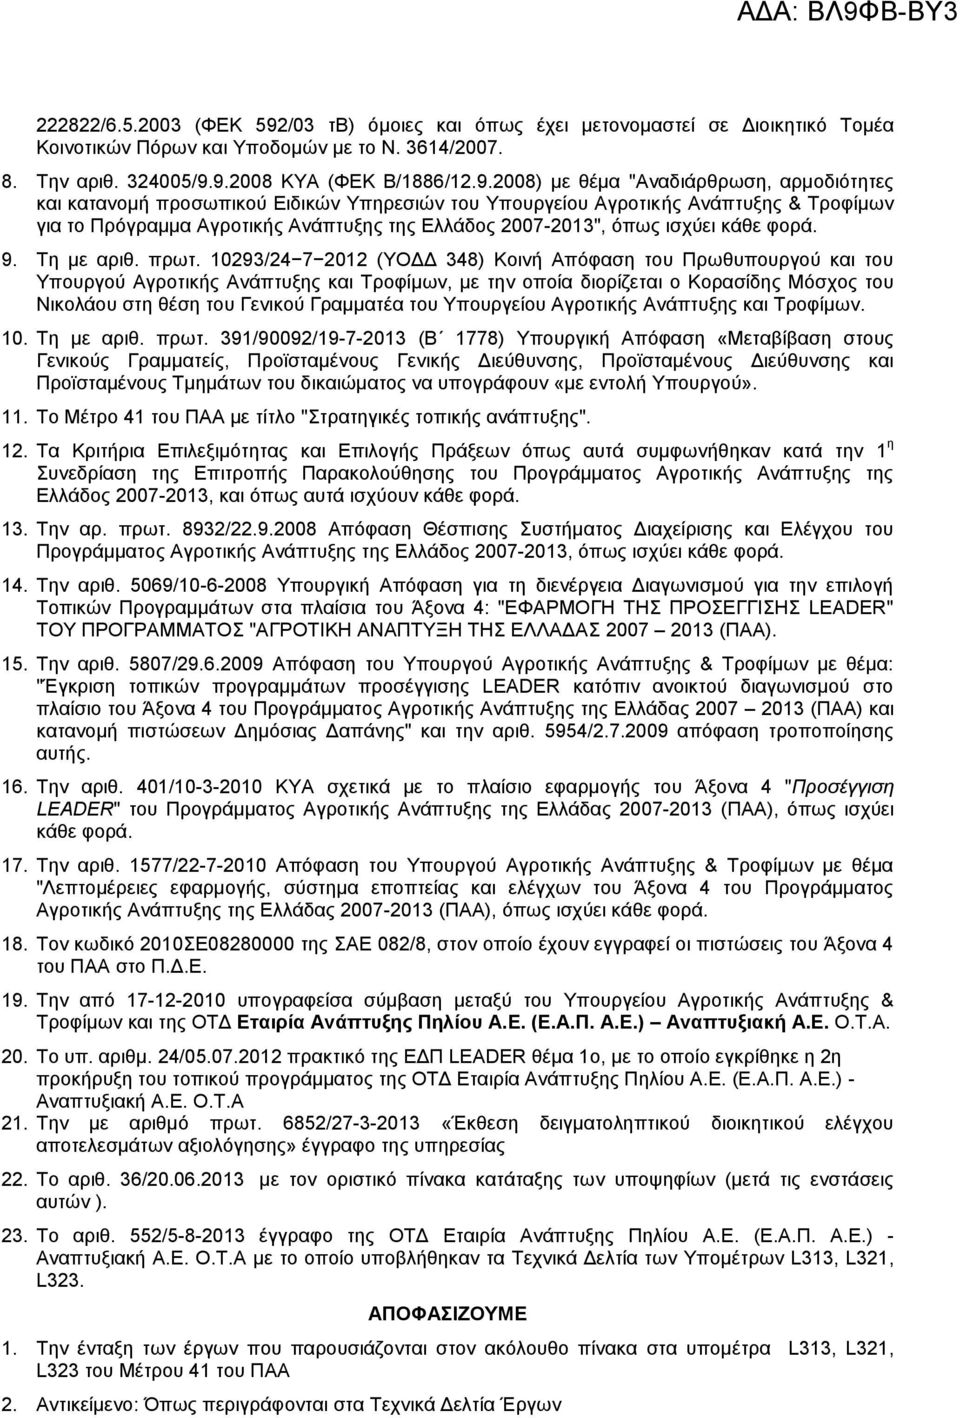 9.2008 ΚΥΑ (ΦΕΚ Β/1886/12.9.2008) με θέμα "Αναδιάρθρωση, αρμοδιότητες και κατανομή προσωπικού Ειδικών Υπηρεσιών του Υπουργείου Αγροτικής Ανάπτυξης & Τροφίμων για το Πρόγραμμα Αγροτικής Ανάπτυξης της